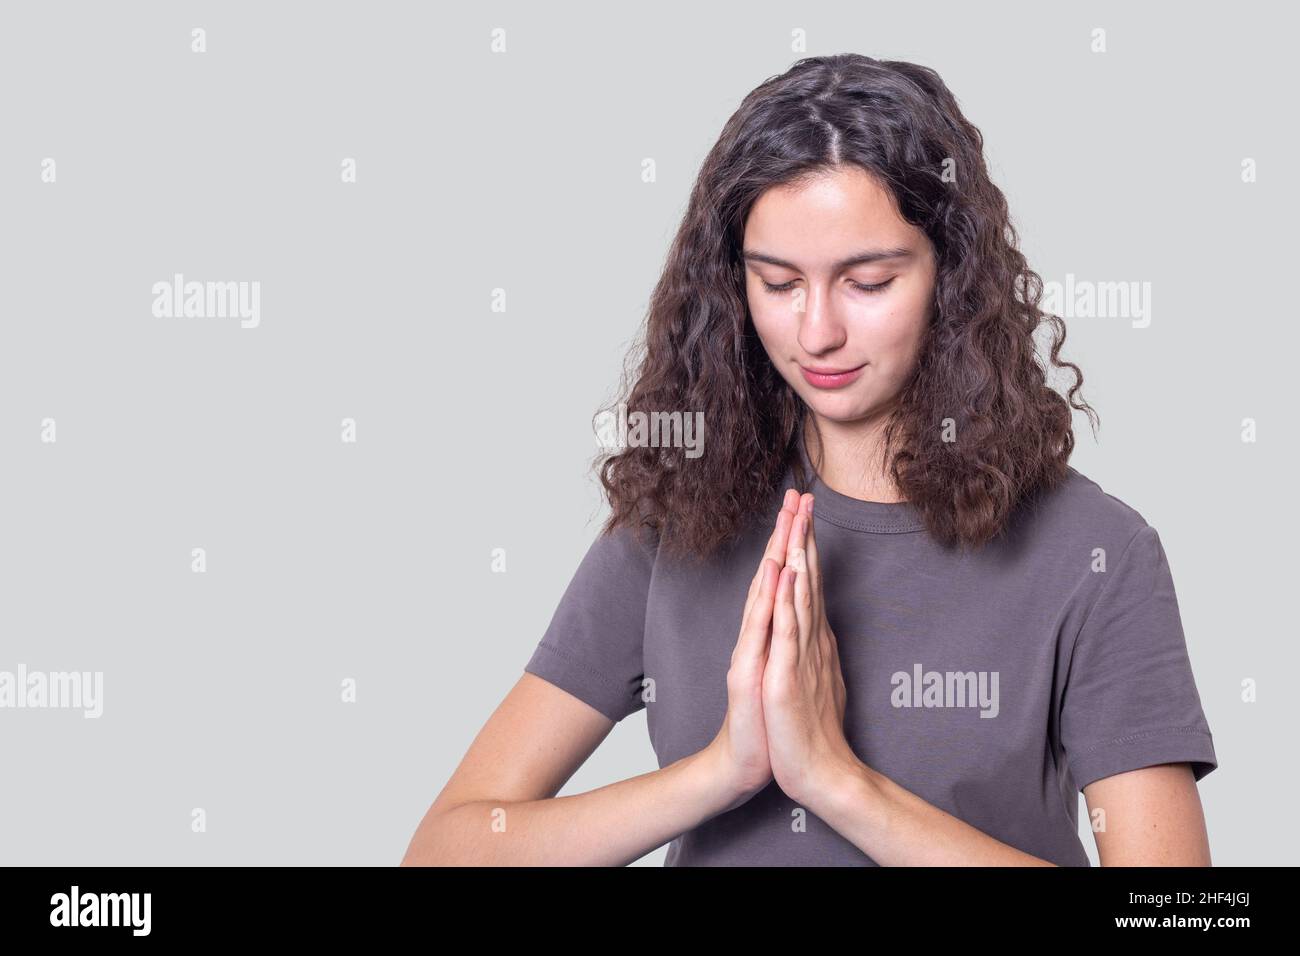 Ritratto di una ragazza speranzosa con capelli ricci tiene le mani insieme in un gesto di preghiera. Rendere omaggio, adorare il Buddha, salutare, esprimere un apolo Foto Stock